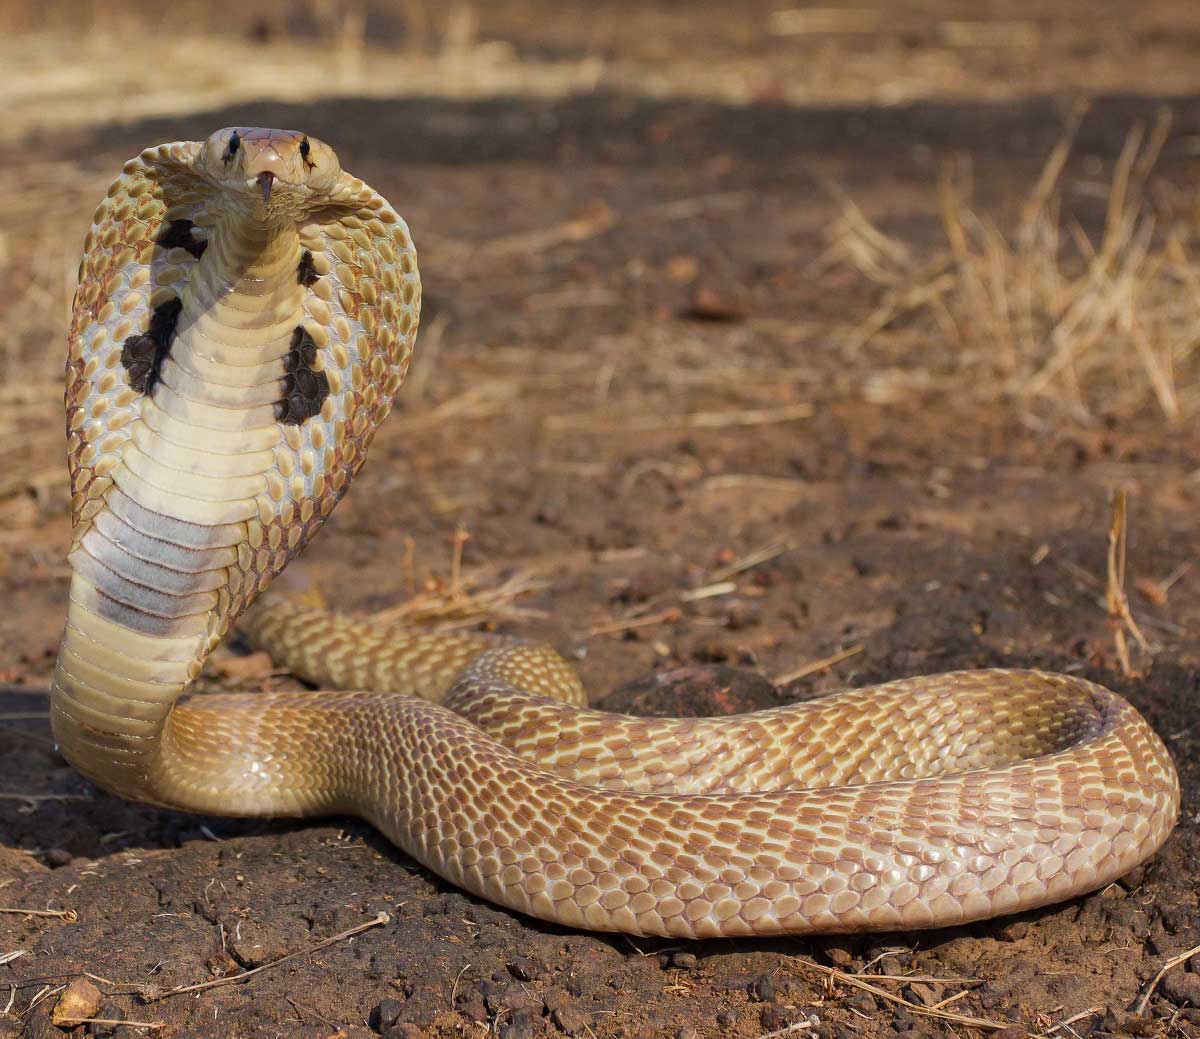 Kobra Dunyanin En Korkunc Hayvanlari